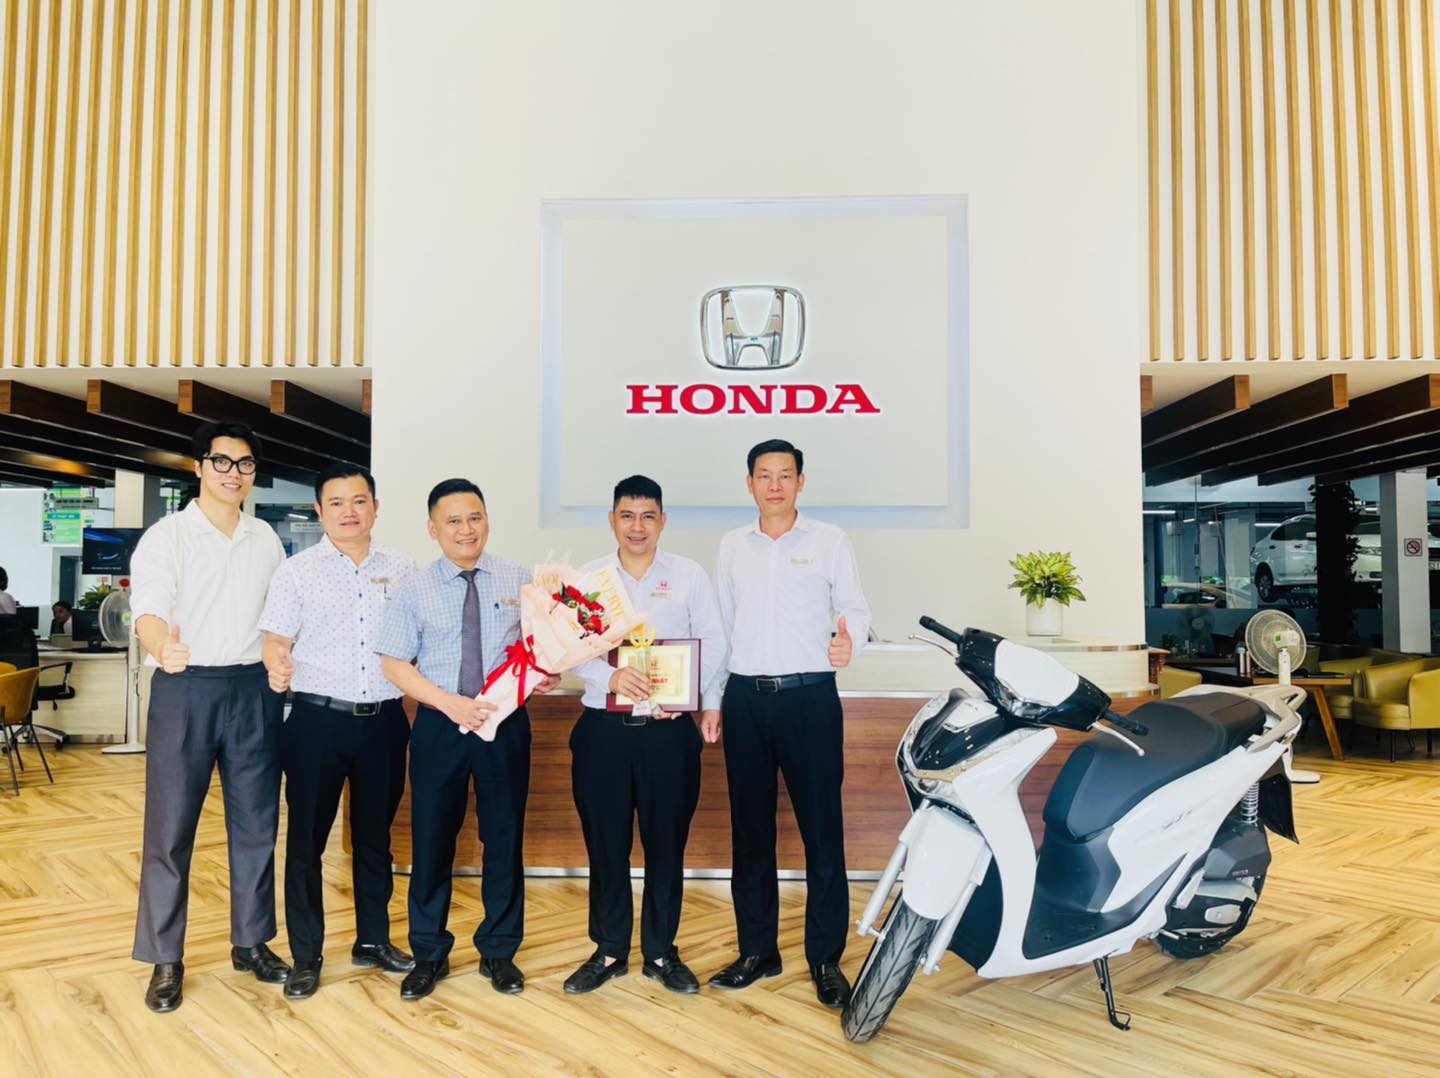 Chúc Mừng Cố Vấn Dịch Vụ Bùi Duy Đông - Cố Vấn Dịch Vụ Xuất Sắc Đã Nhận Được Giải Thưởng Xe Máy Honda SH Của Honda Việt Nam